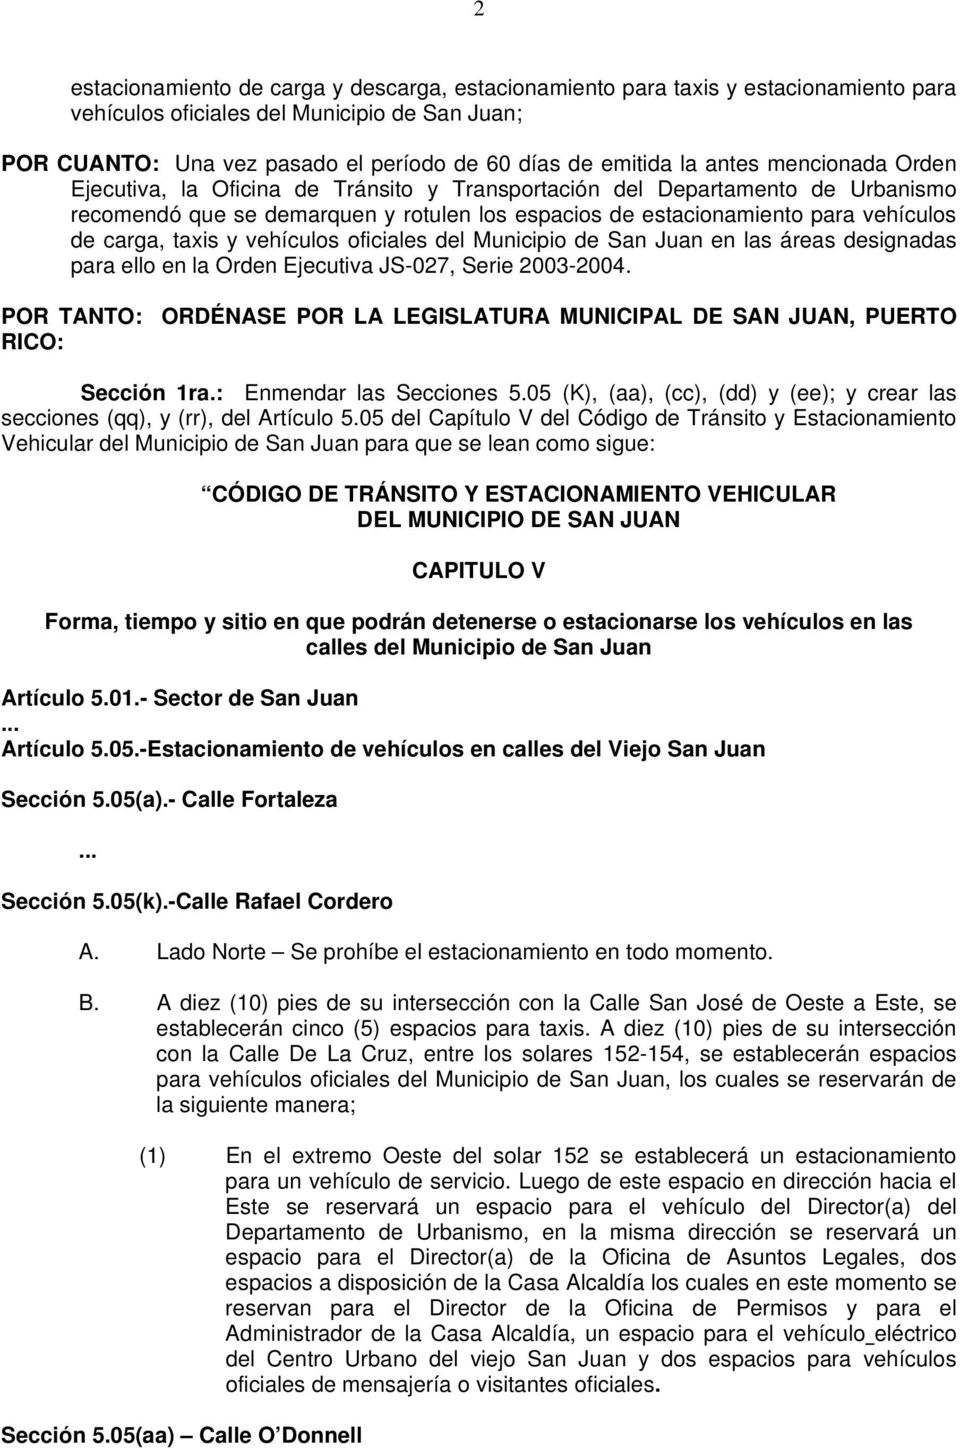 taxis y vehículos oficiales del Municipio de San Juan en las áreas designadas para ello en la Orden Ejecutiva JS-027, Serie 2003-2004.